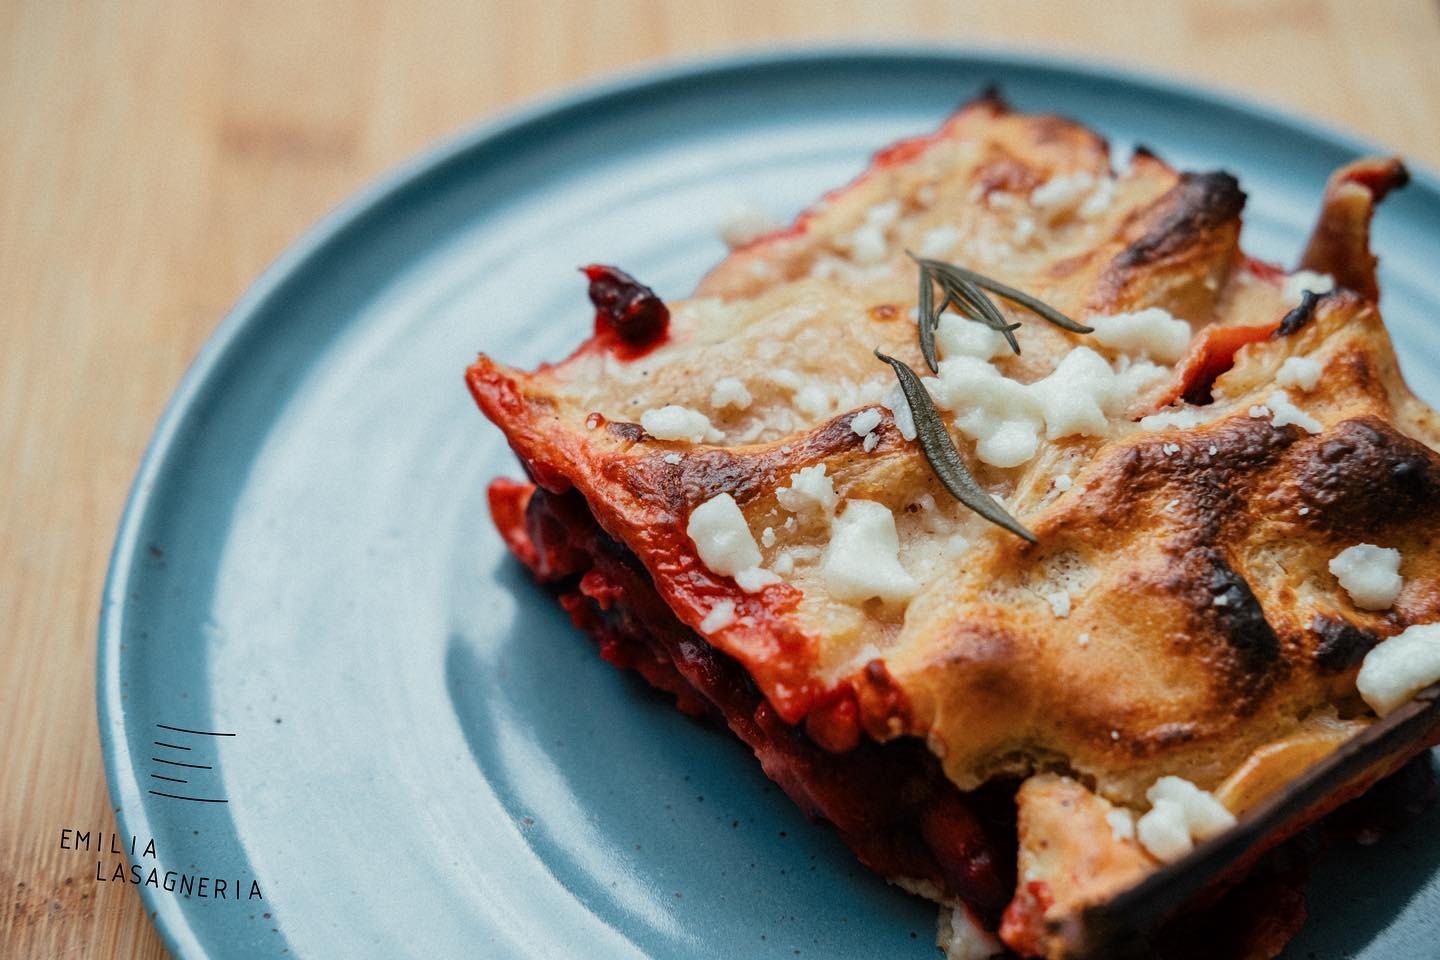 A lasagne, ami olyan jó, mint az olaszországi emlékeidben őrzött eredeti – Emilia Lasagneria 